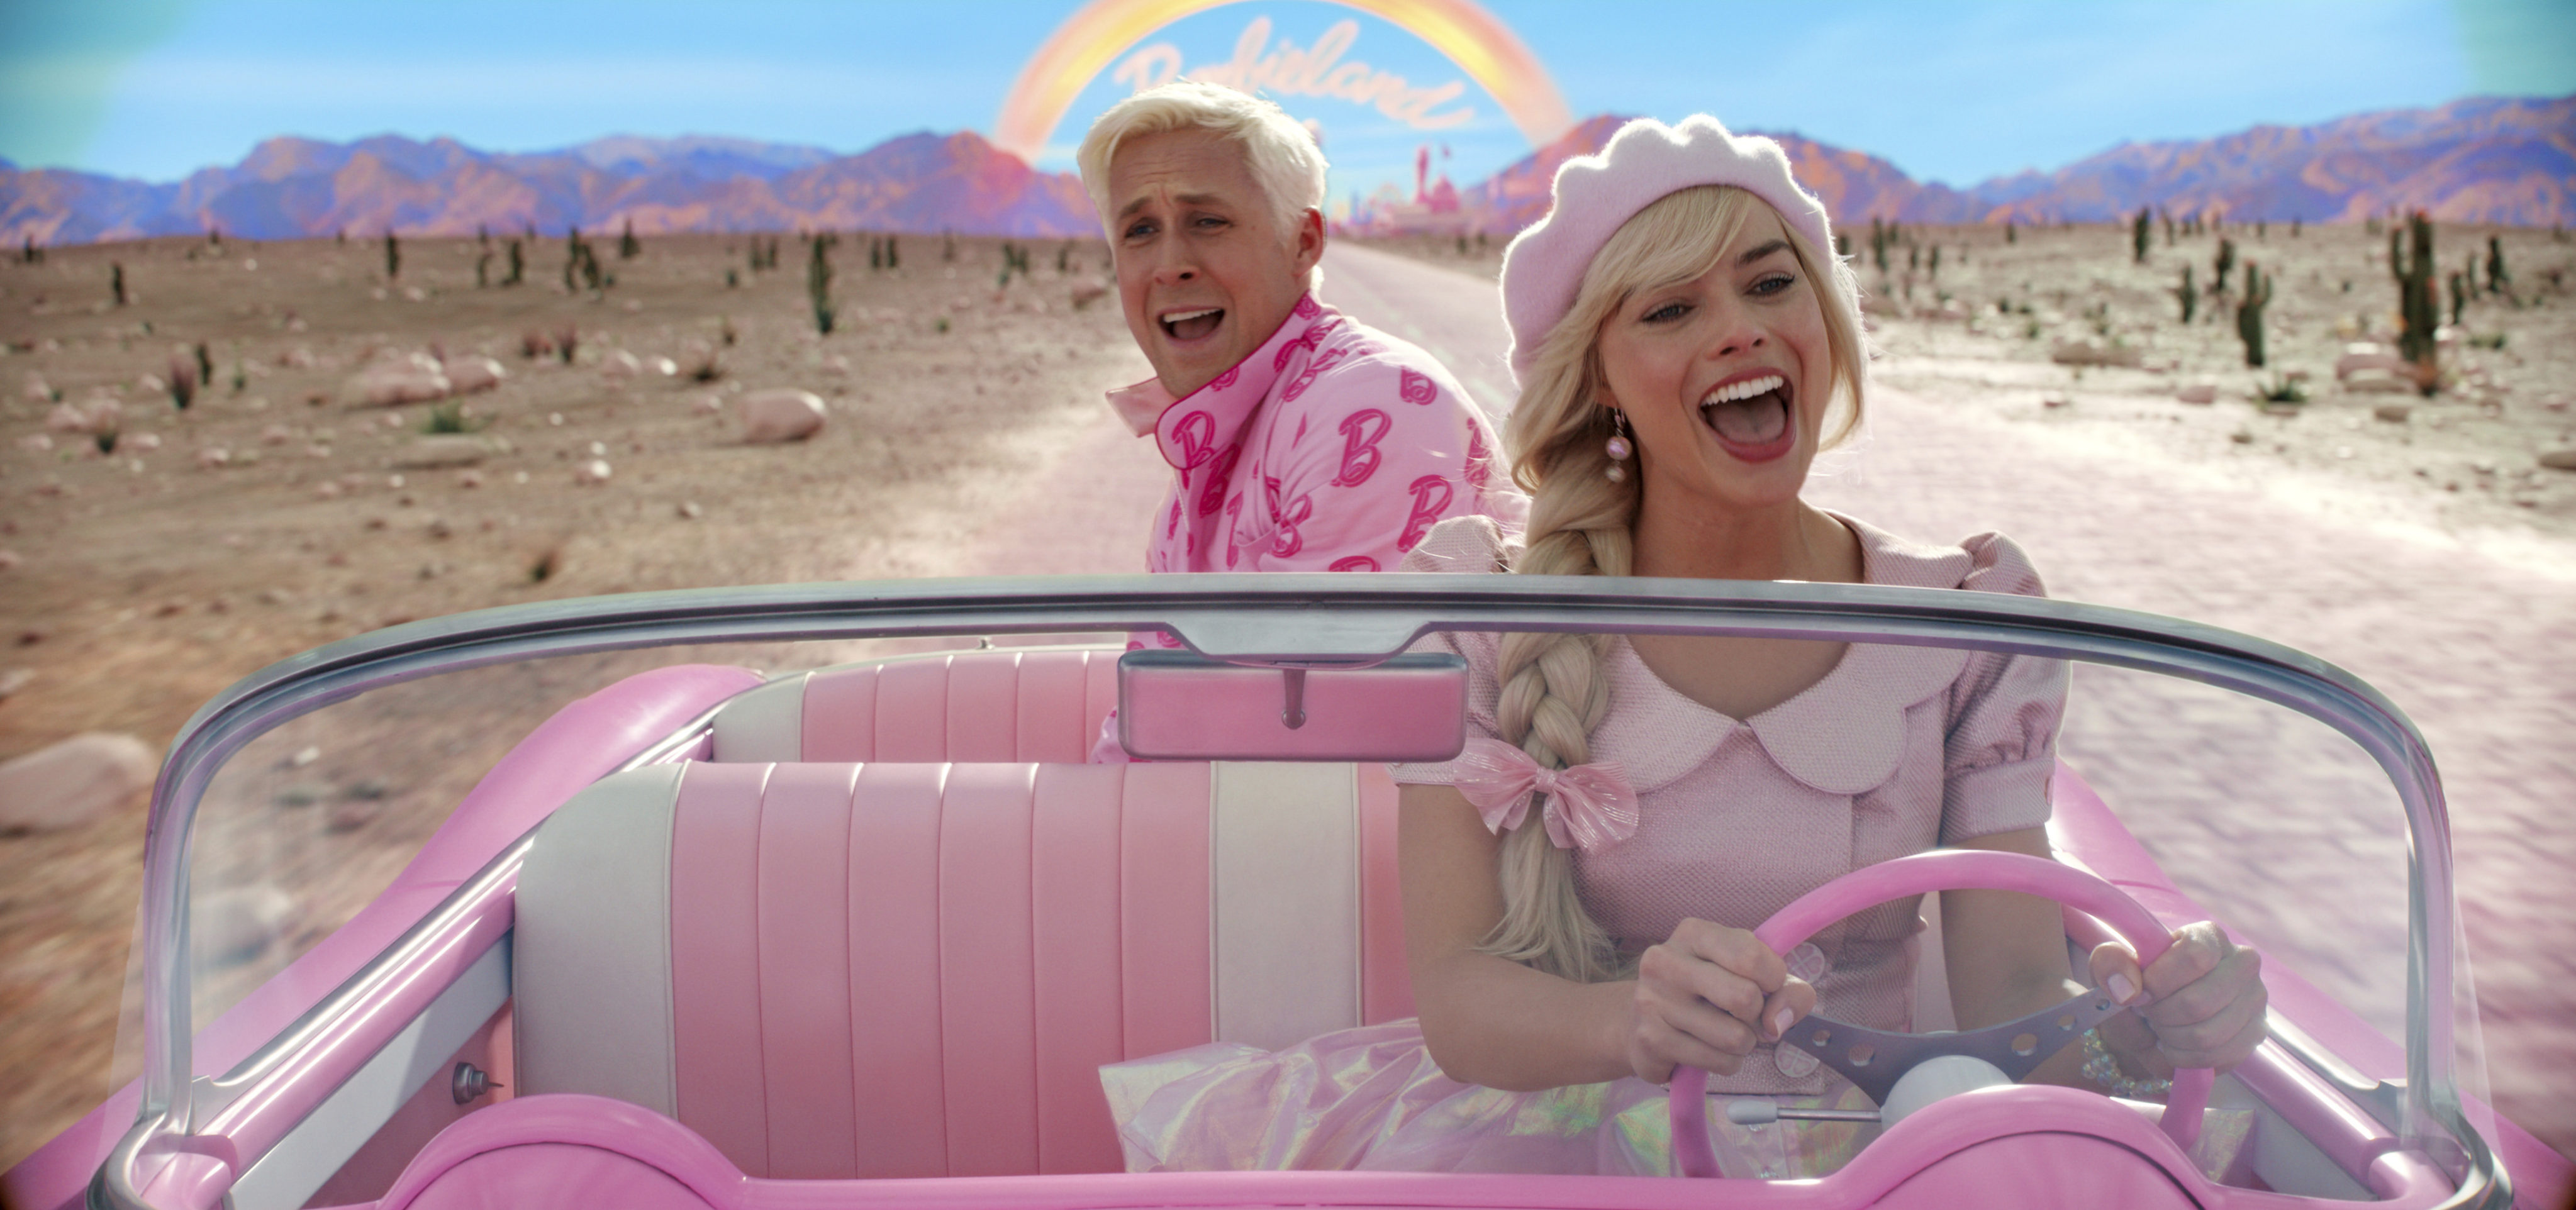 Ryan Gosling and Margot Robbie star in “Barbie.” Photo: Warner Bros Pictures via AP